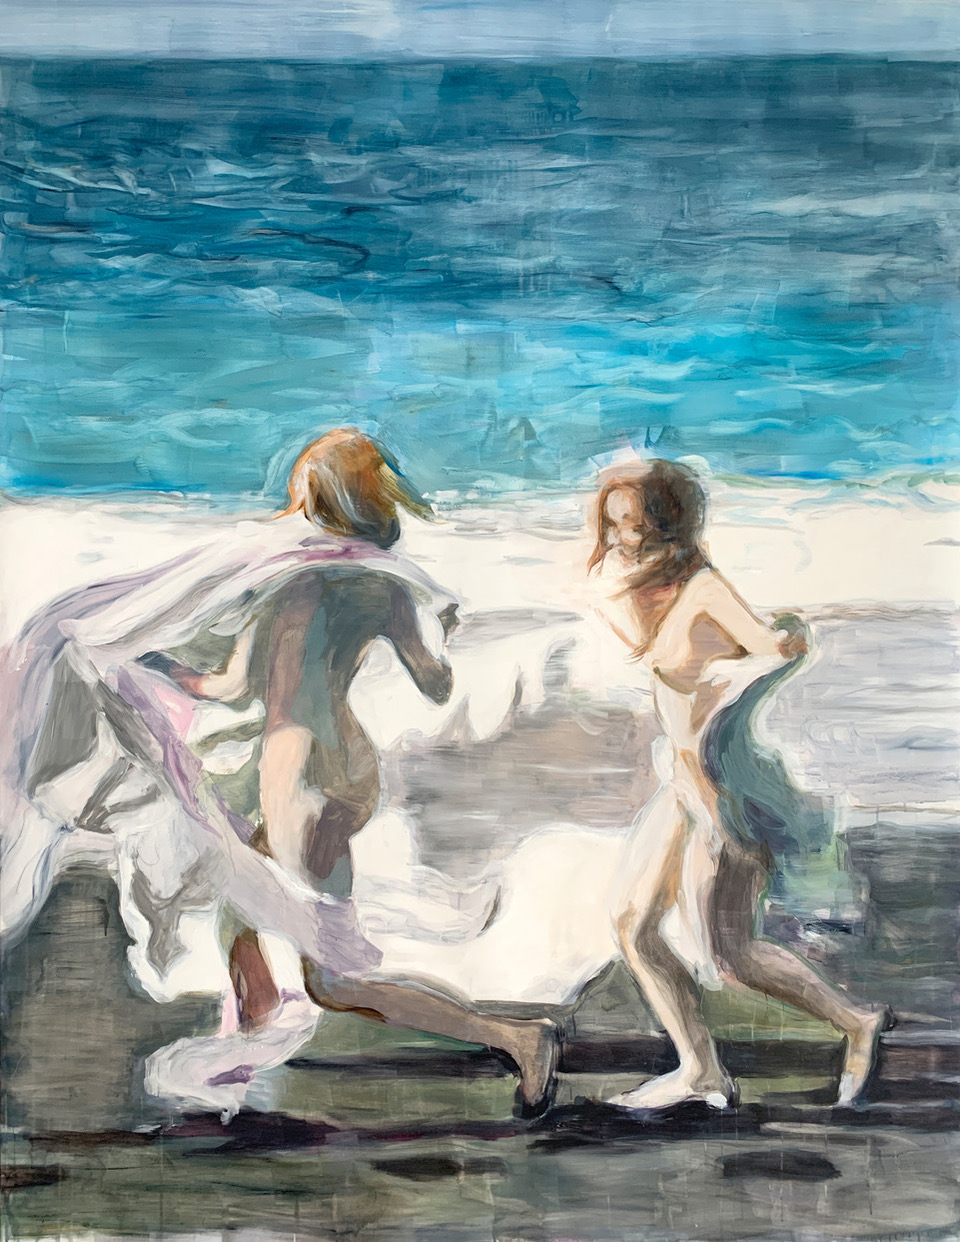 Zwei junge Frauen bewegen sich tänzerisch und in leichte Tücher gehüllt vor einer Meereslandschaft.